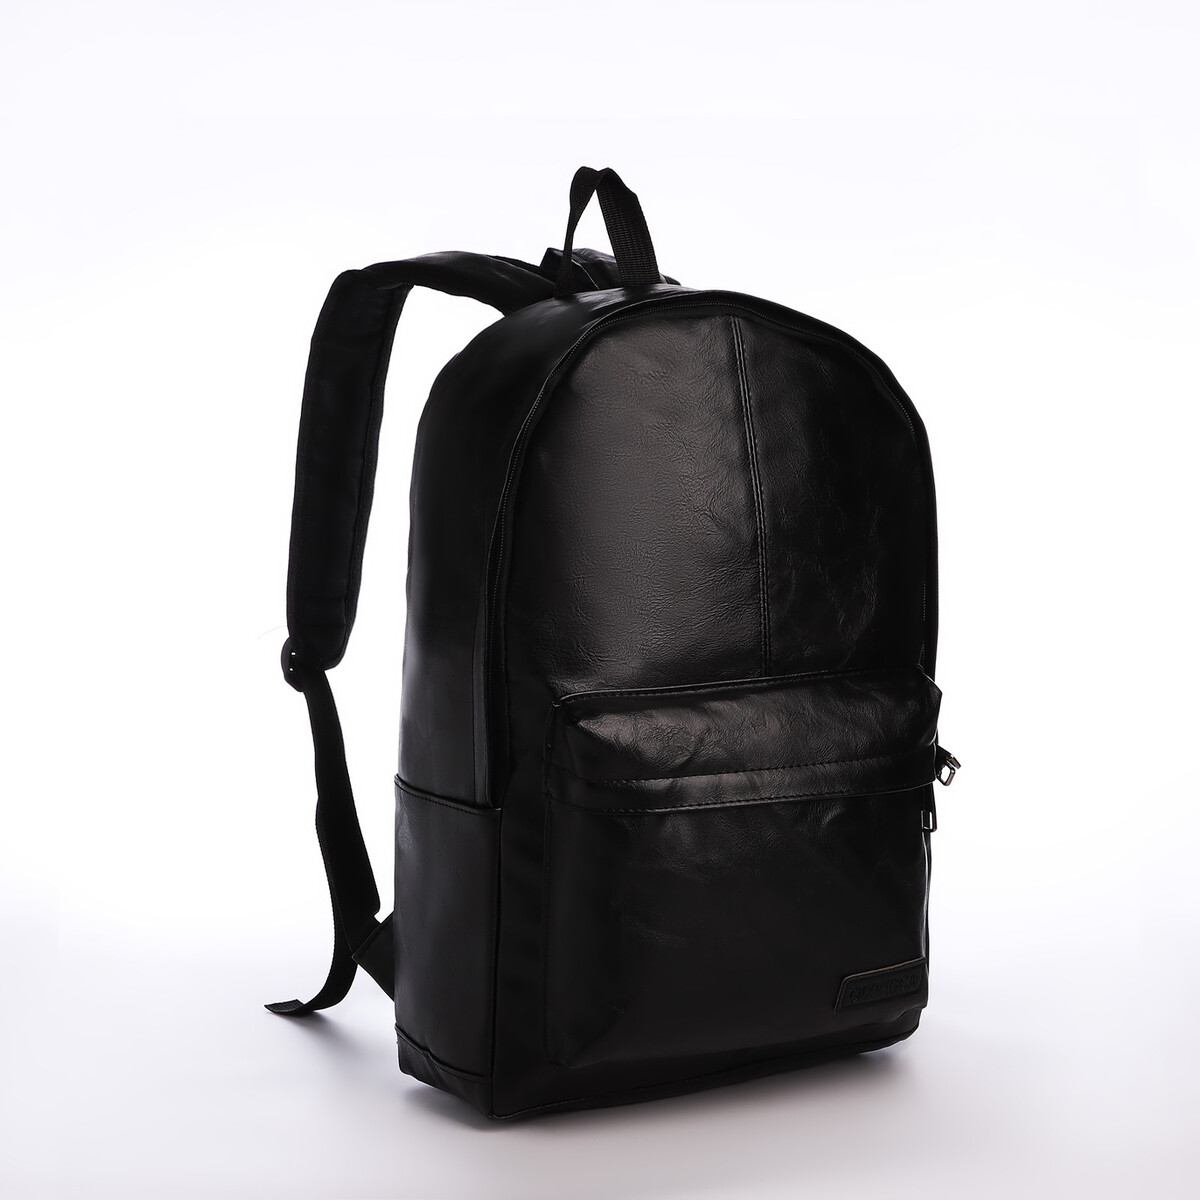 Рюкзак городской из искусственной кожи на молнии, 3 кармана, цвет черный